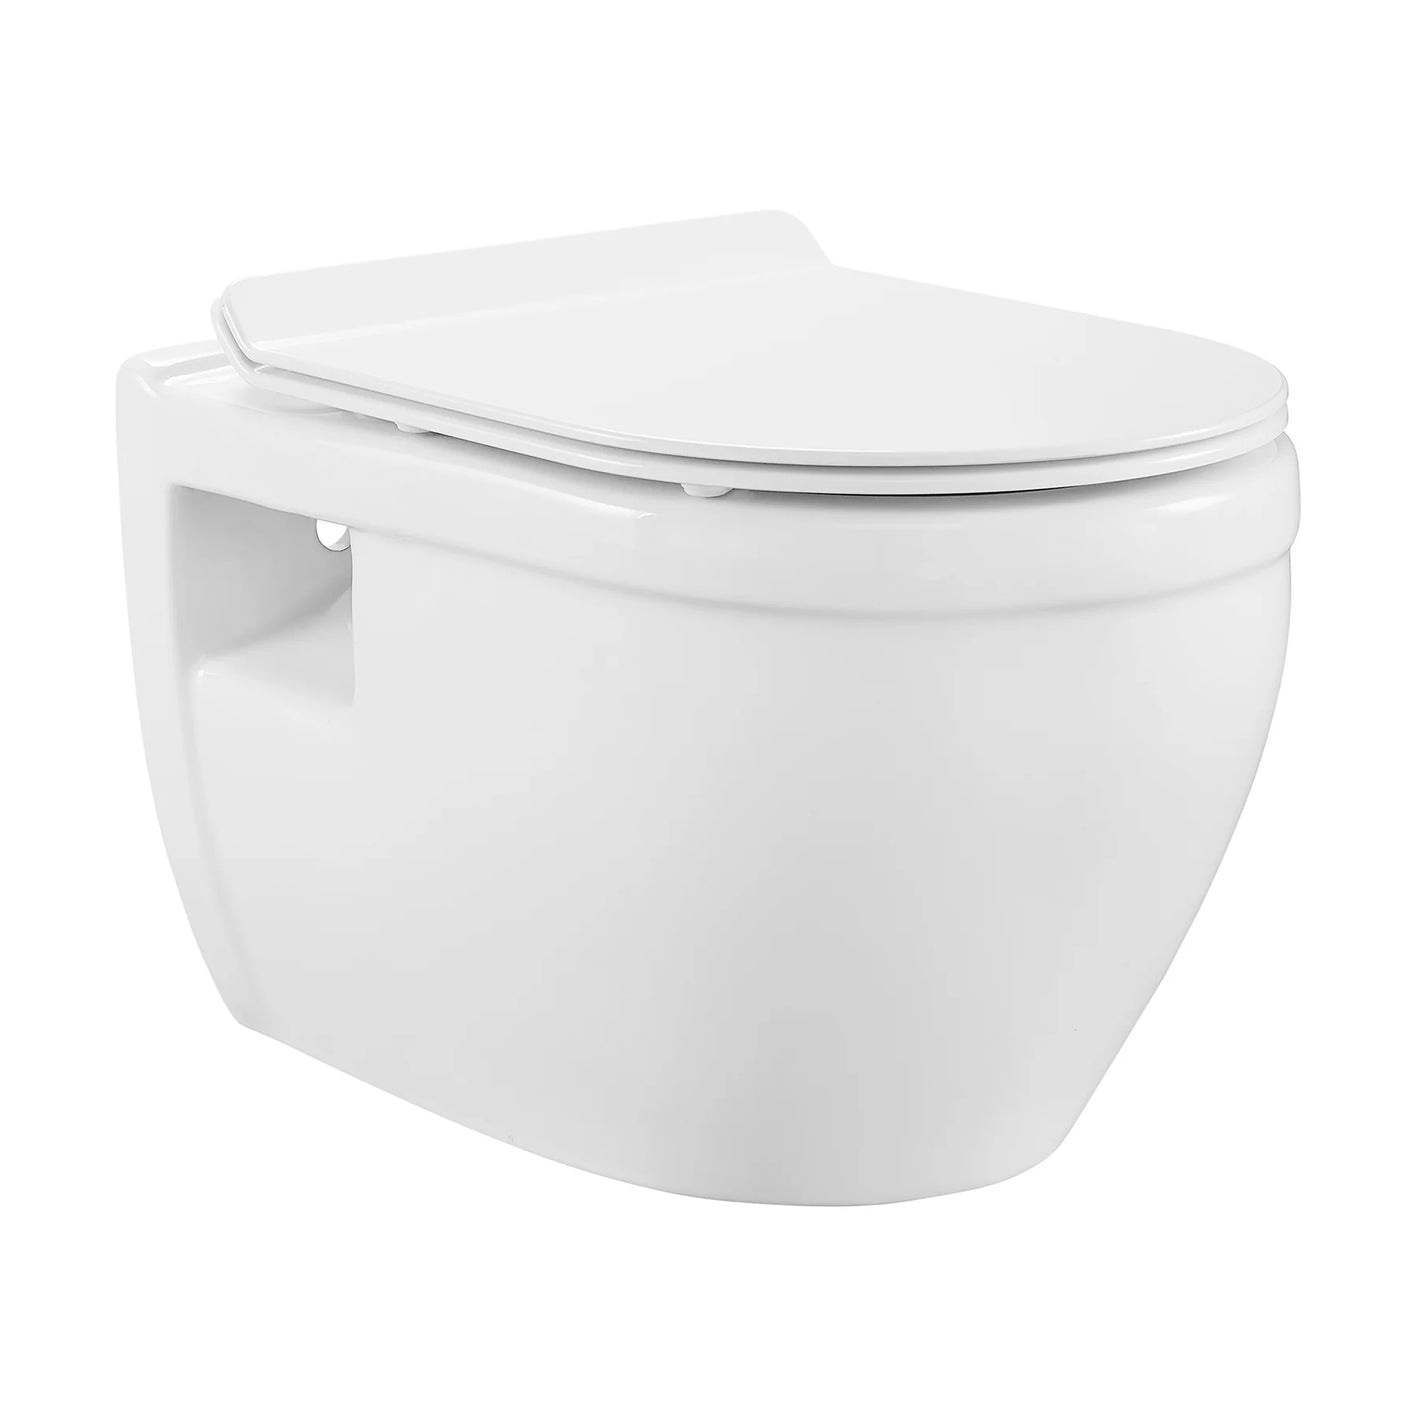 Ivy Wall-Hung Elongated Toilet Bowl